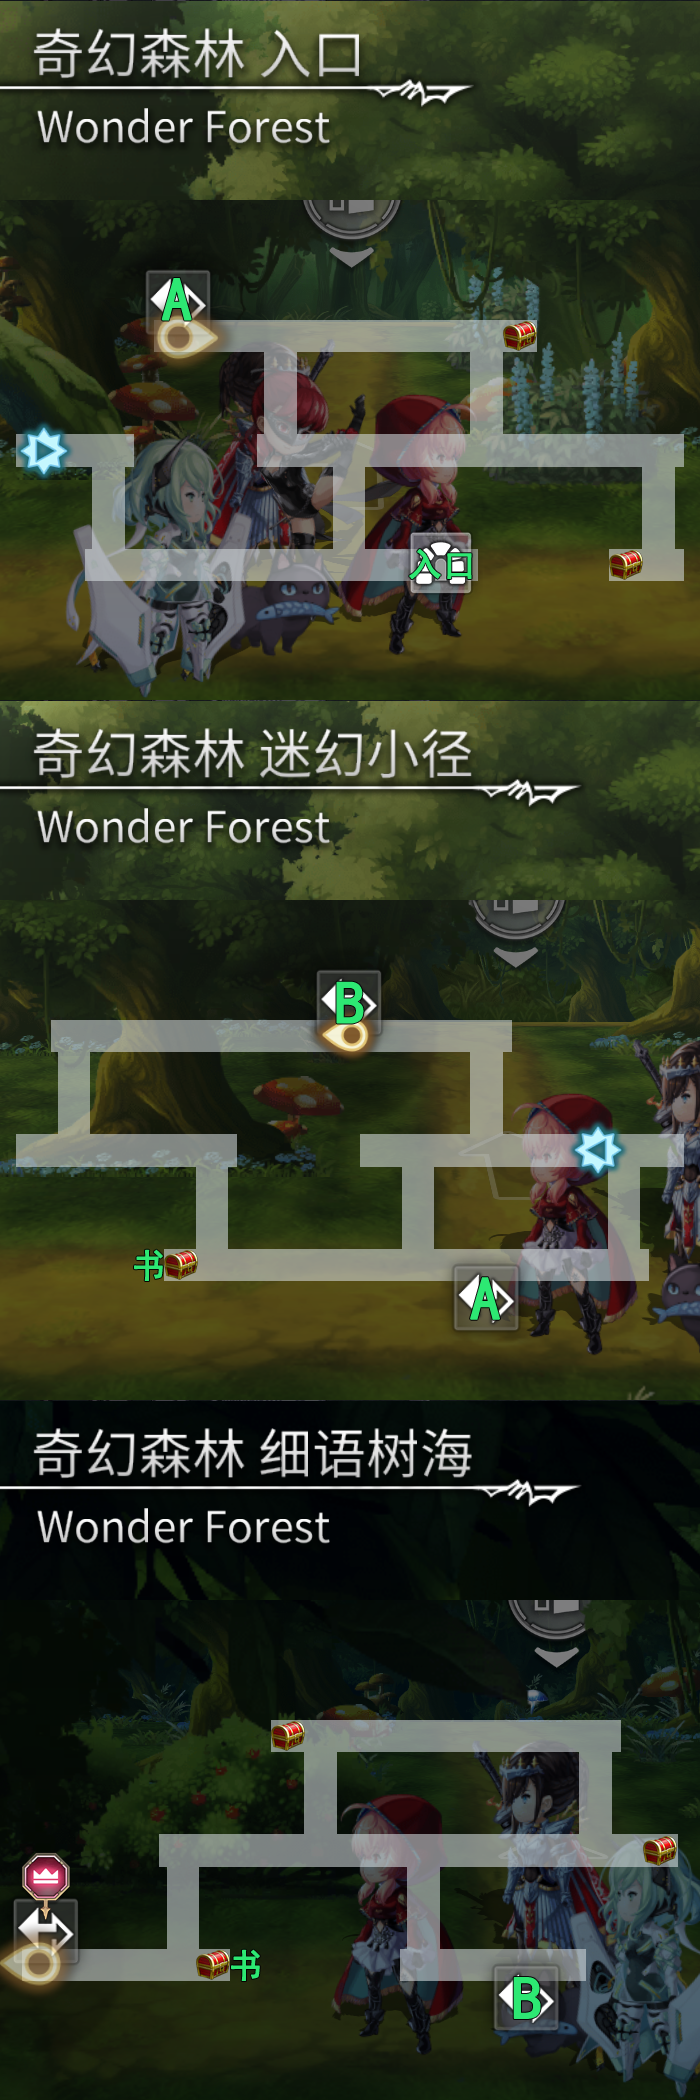 奇幻森林迷宫地图.png